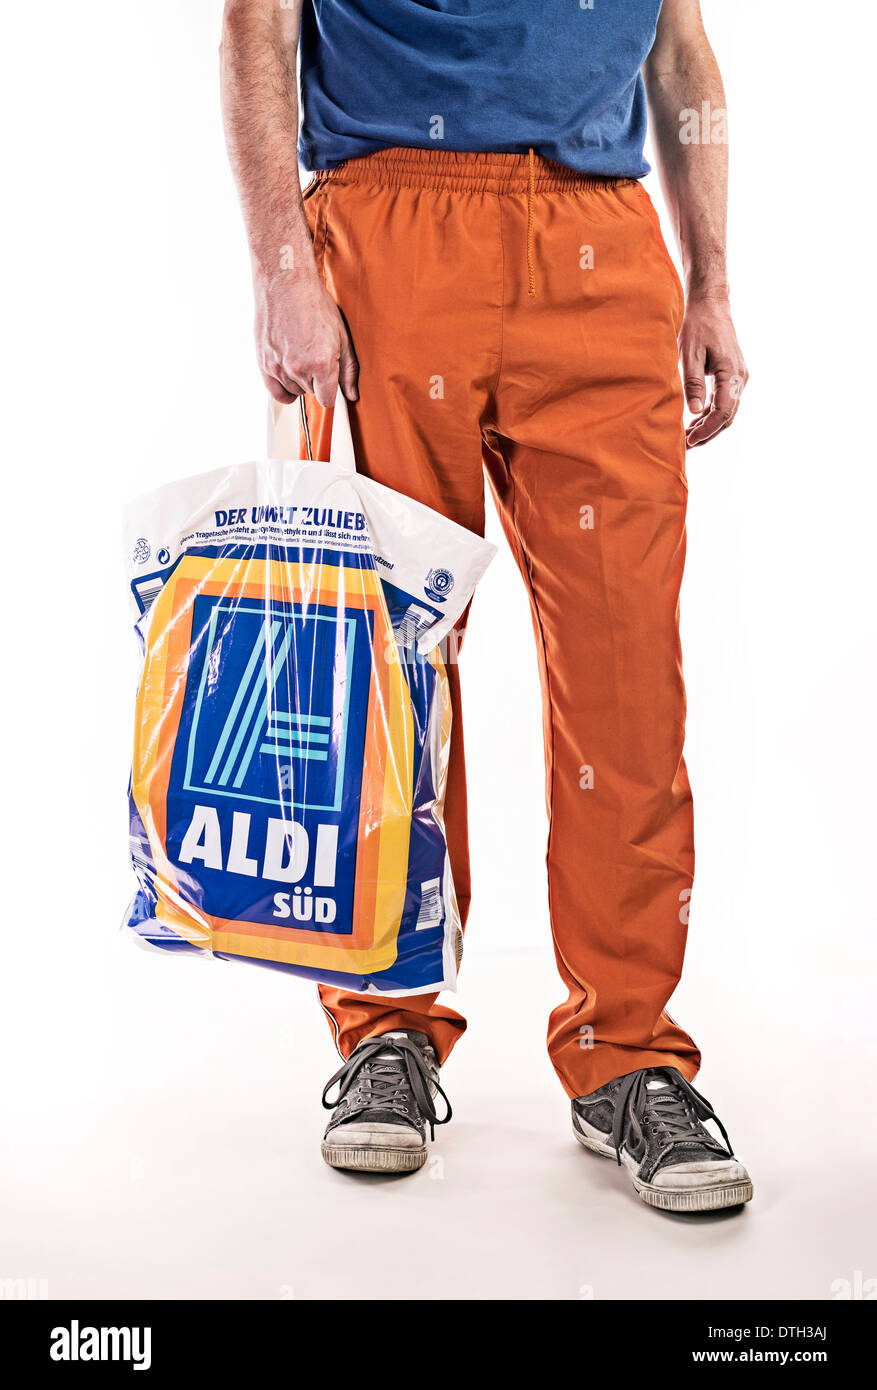 La partie inférieure du corps d'un homme avec survêtement, transportant un sac en plastique alimentaire de discounter Aldi. Banque D'Images